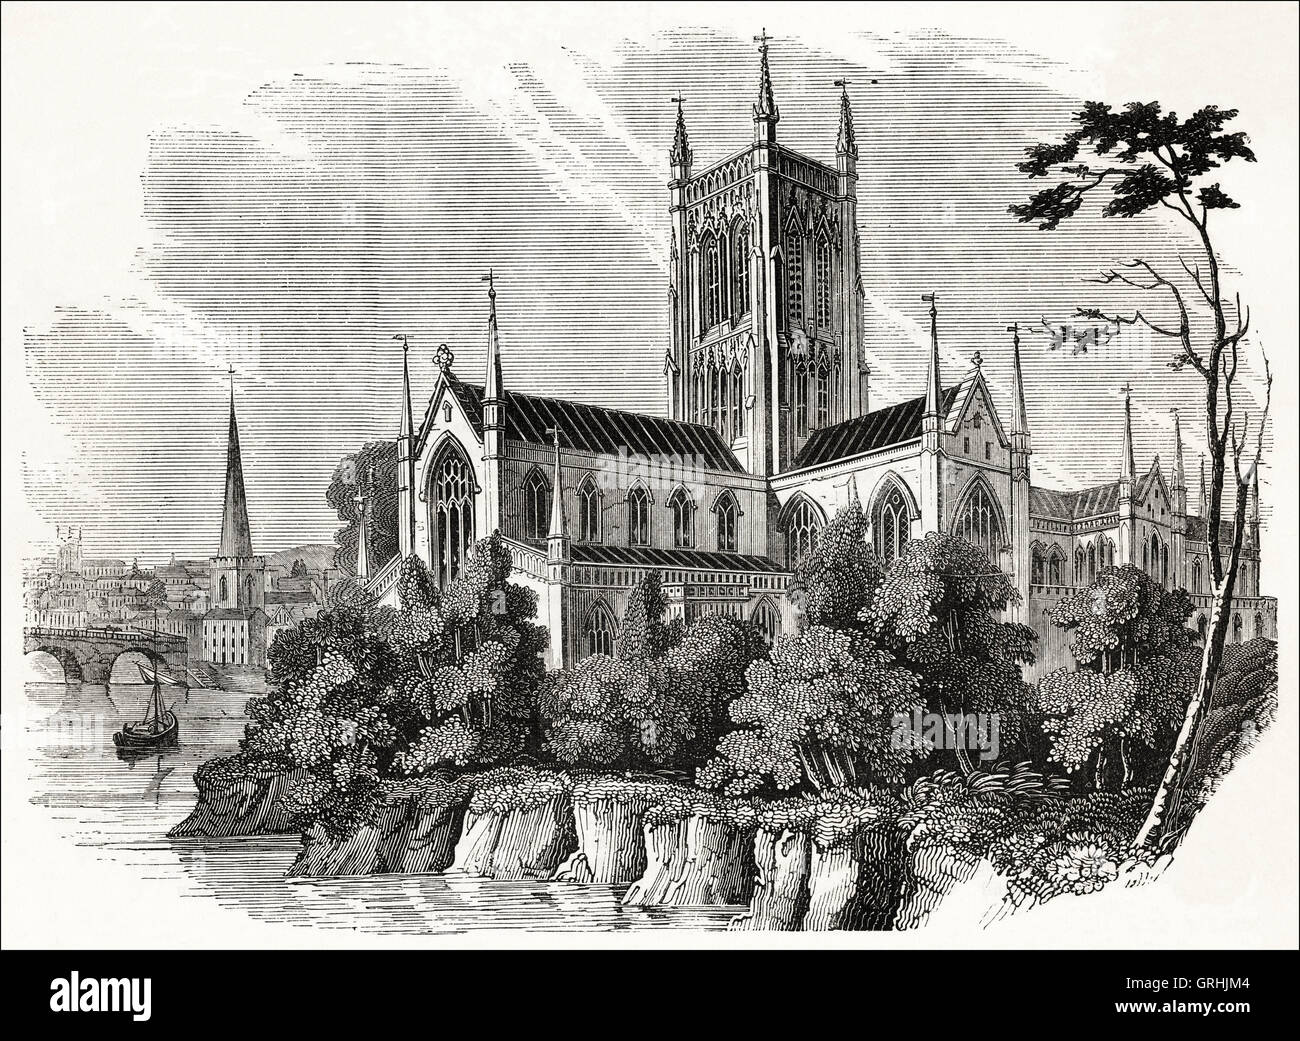 Worcester Kathedrale am Ufer des Flusses Severn zwischen 1084 & 1504 erbaut. Viktorianischen Holzschnitt, Kupferstich, ca. 1845. Stockfoto